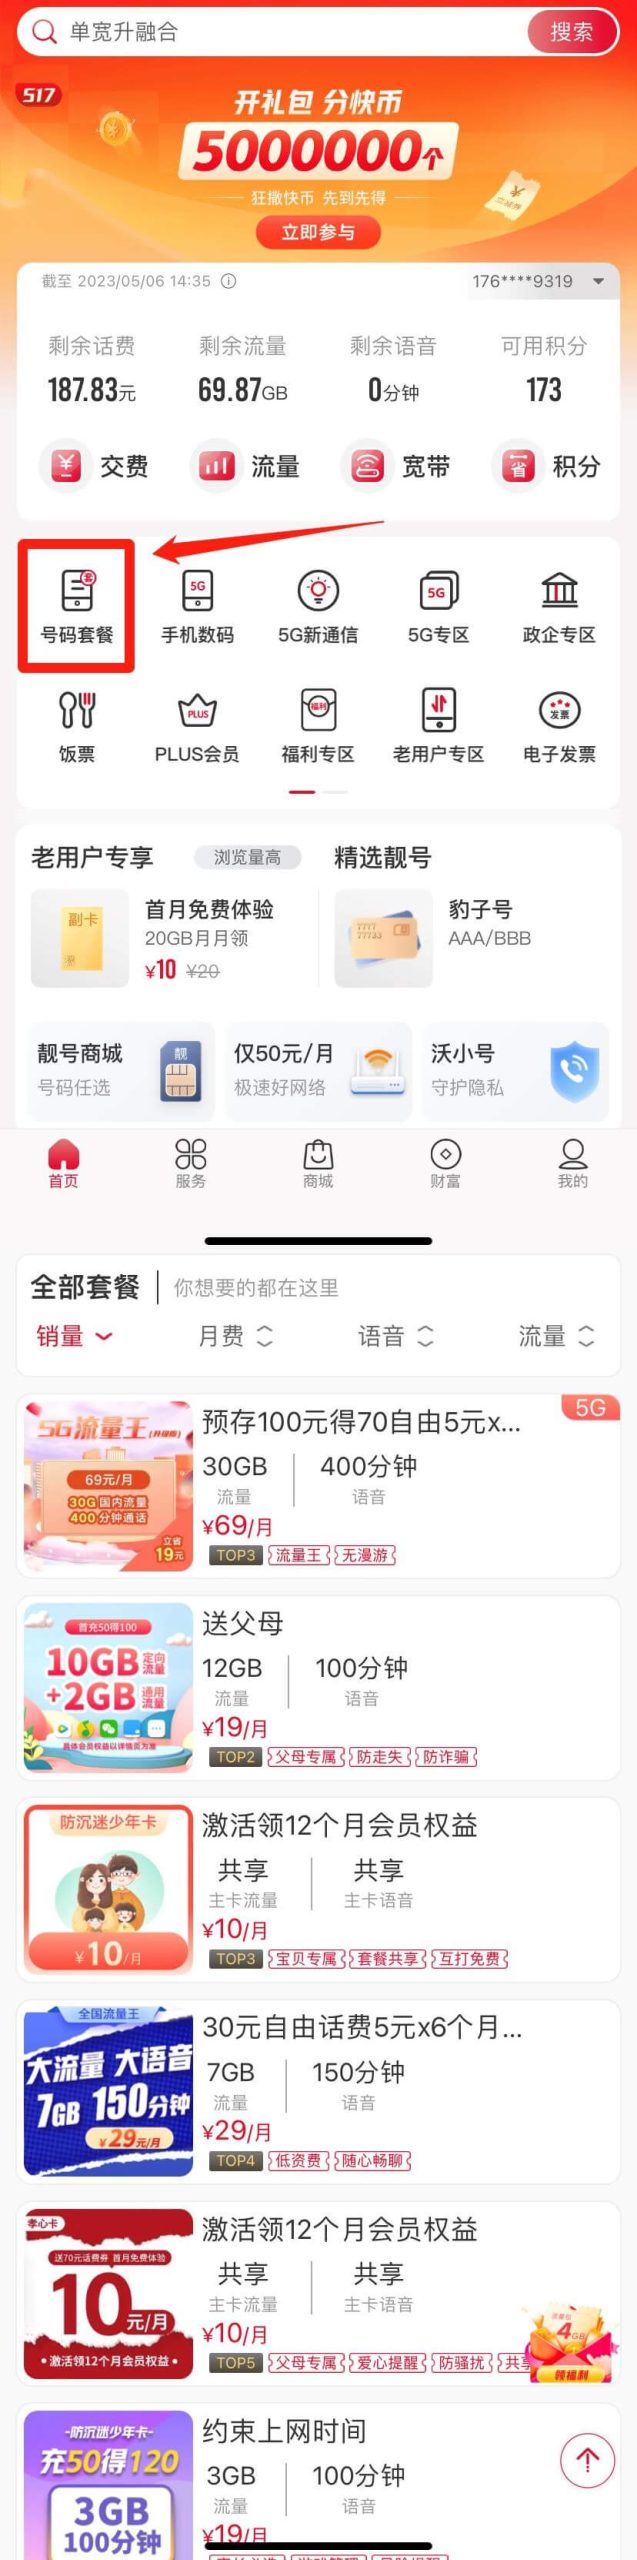 中国联通app申请联通卡的步骤图